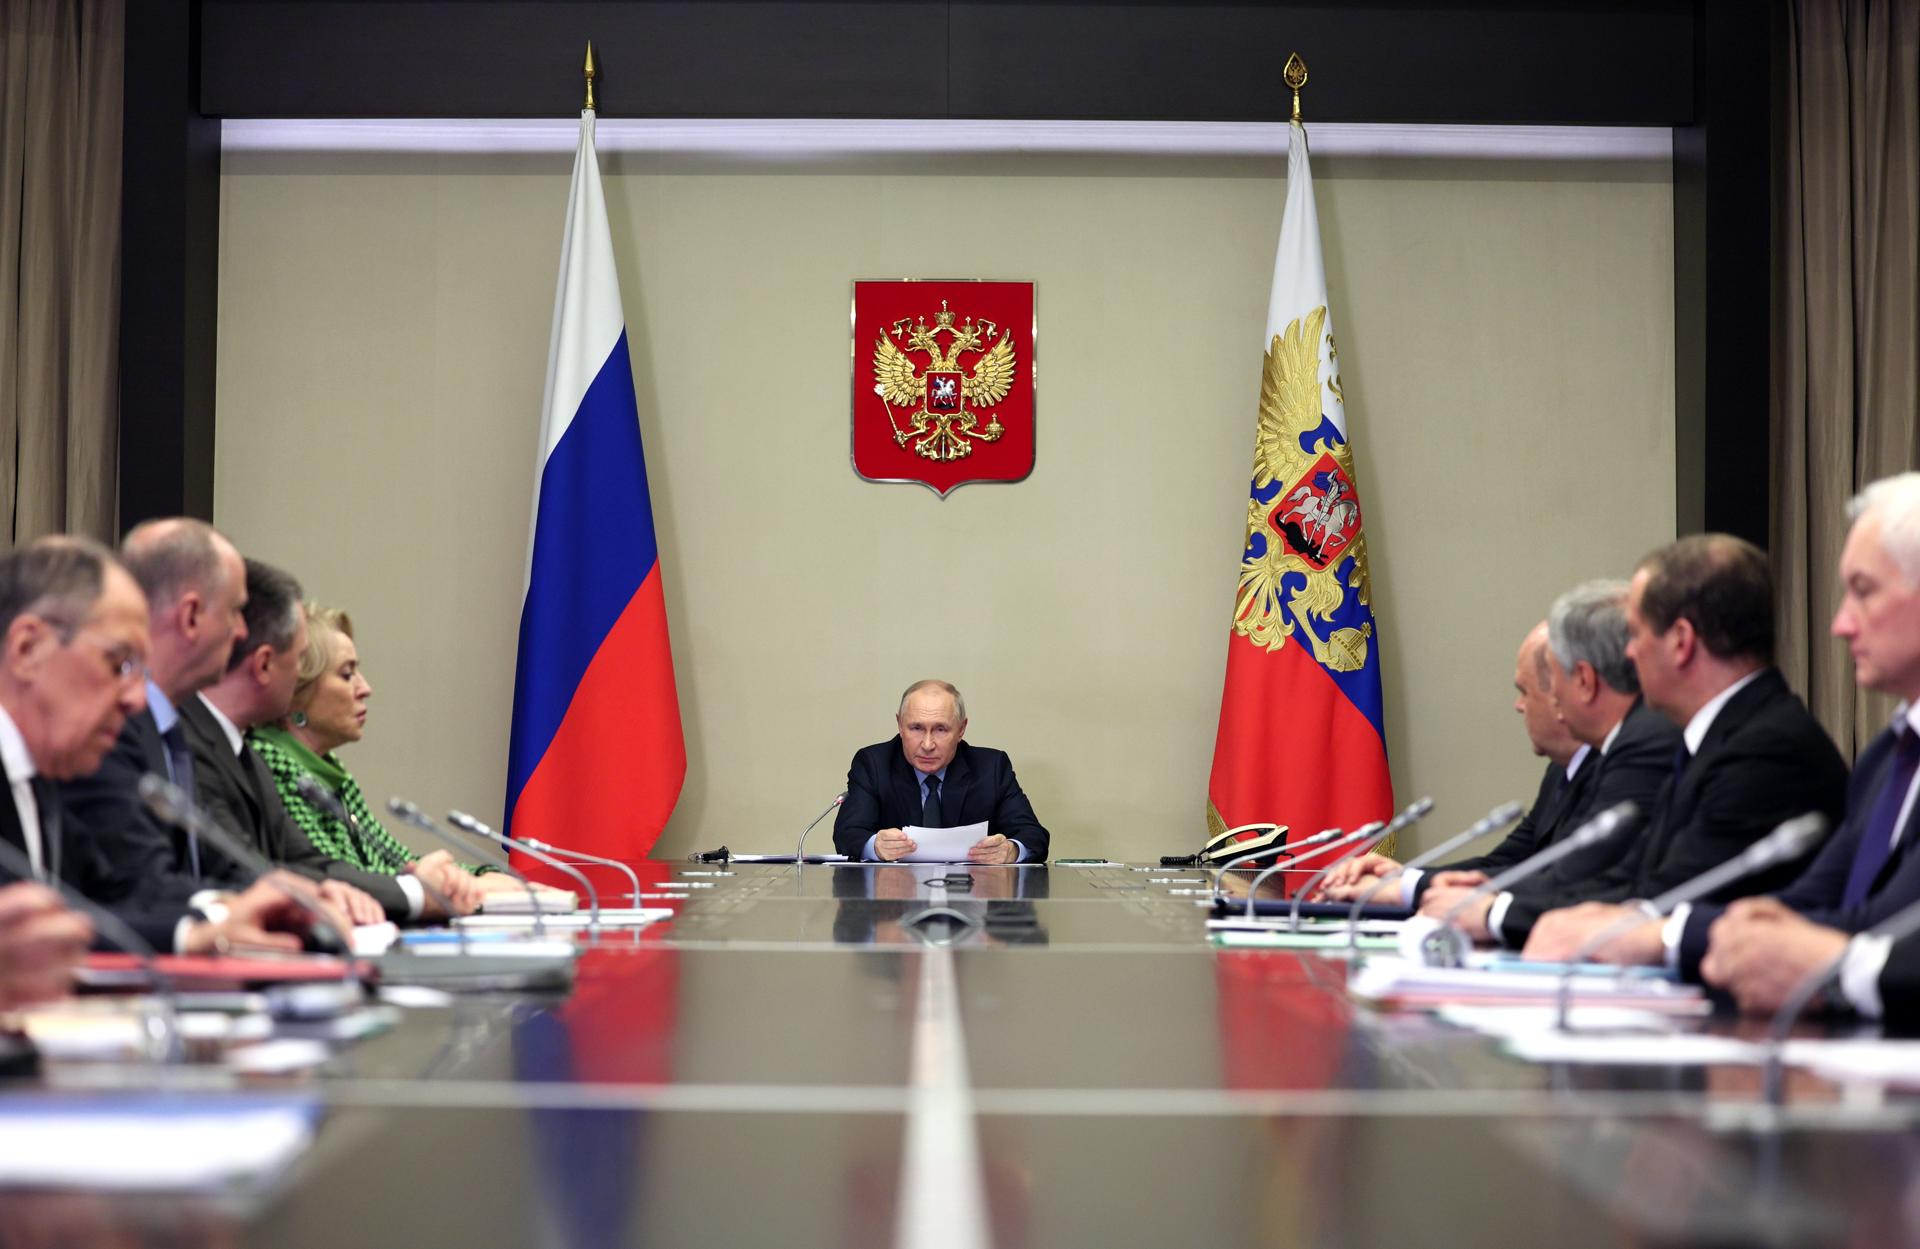 Putin llamó a su gobierno a estar preparado a nuevas sanciones occidentales